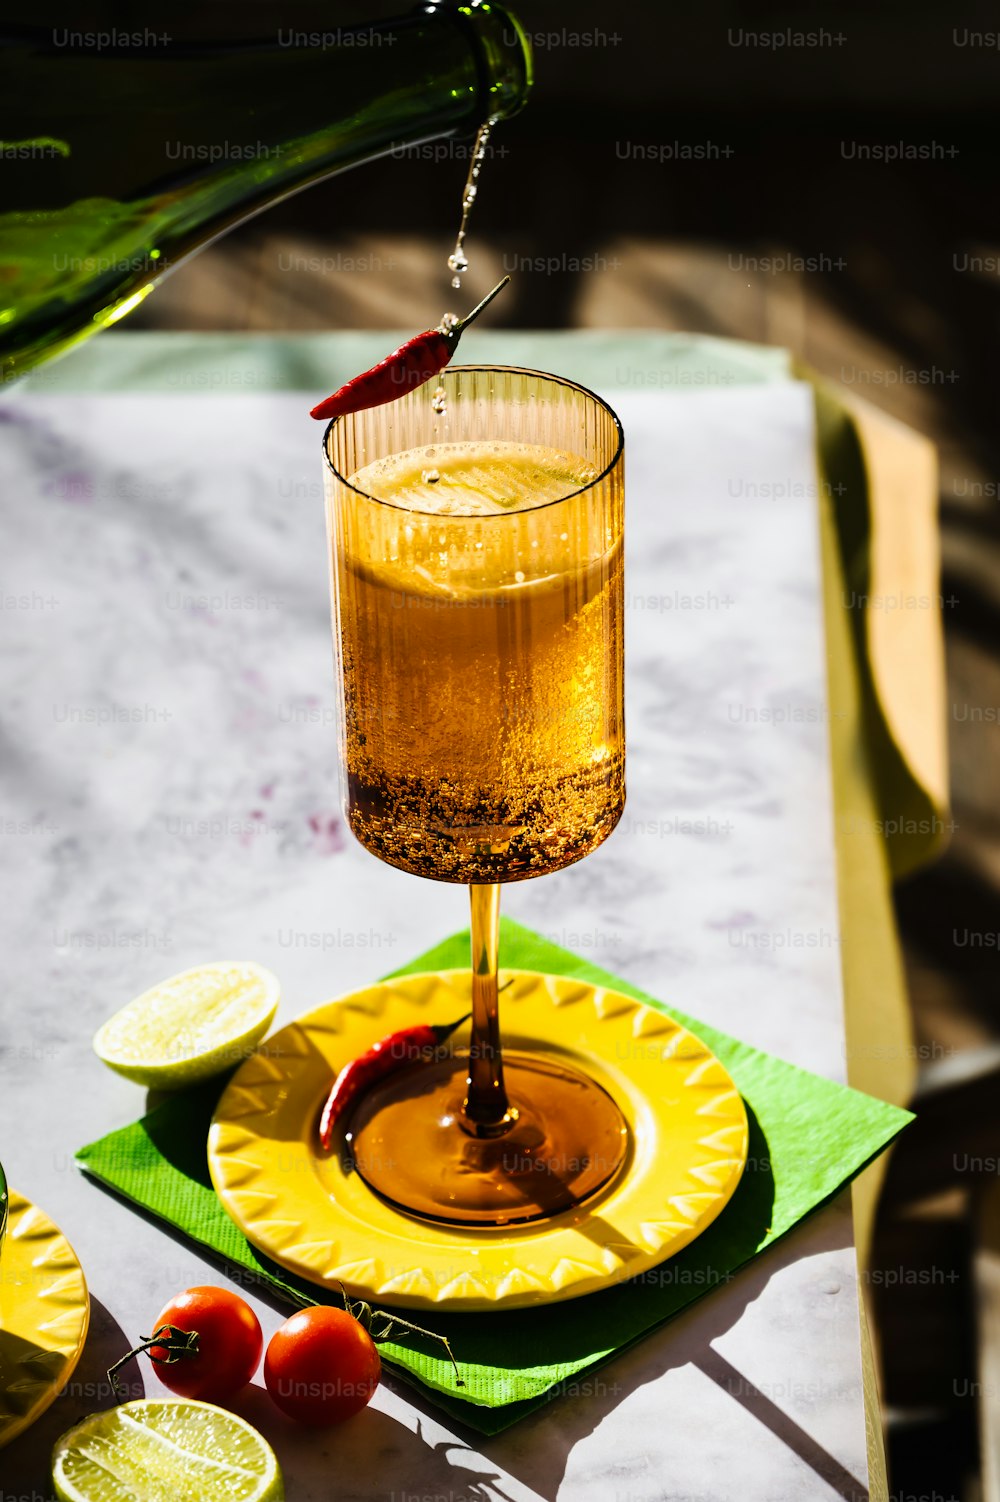 una bevanda versata in un bicchiere su un piatto giallo